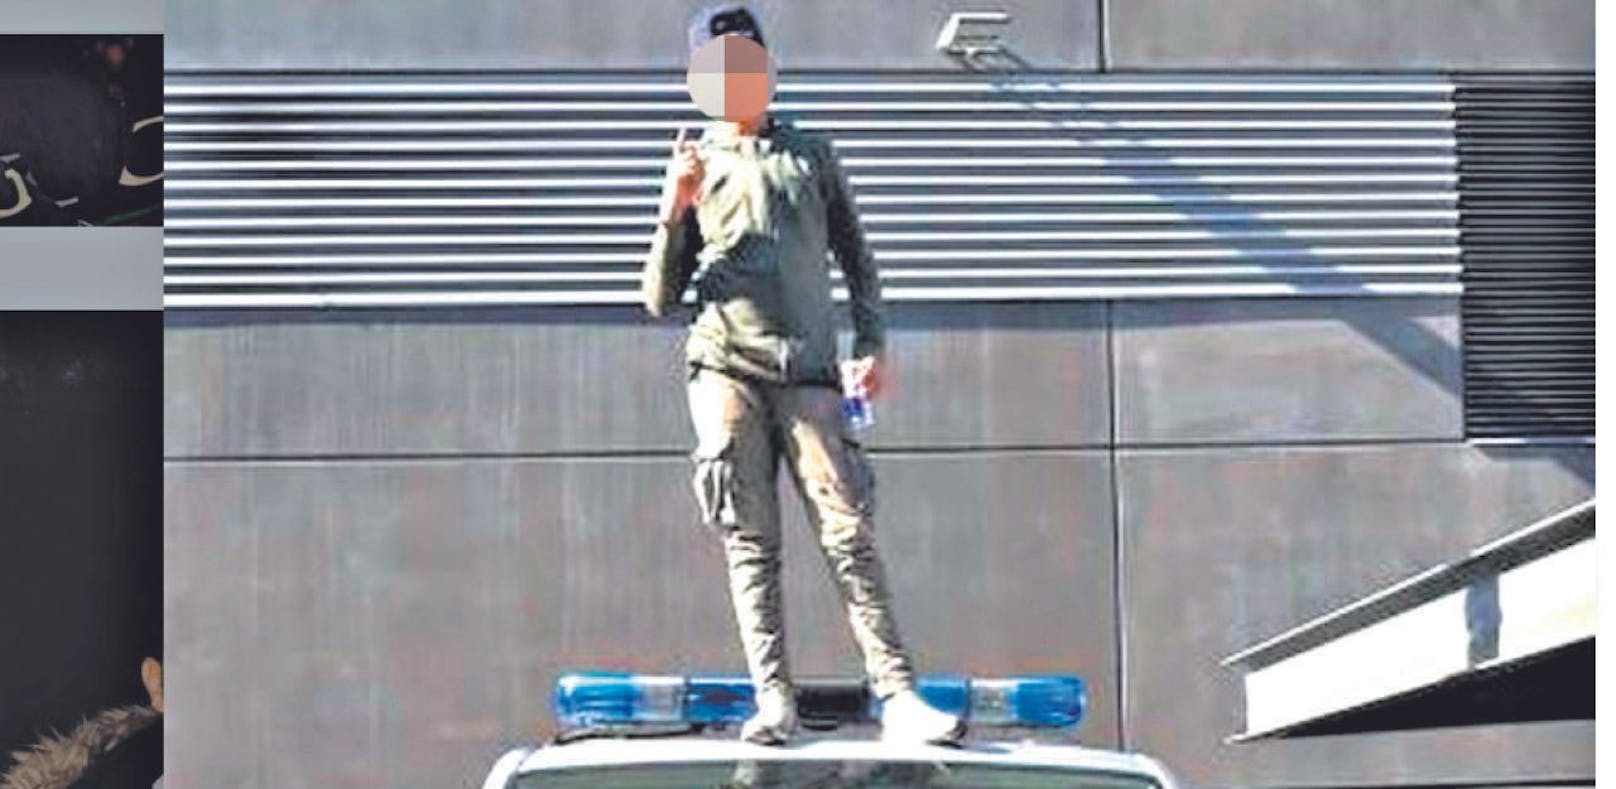 Provokation: Nachwuchs-Gangster posiert auf Polizeiauto